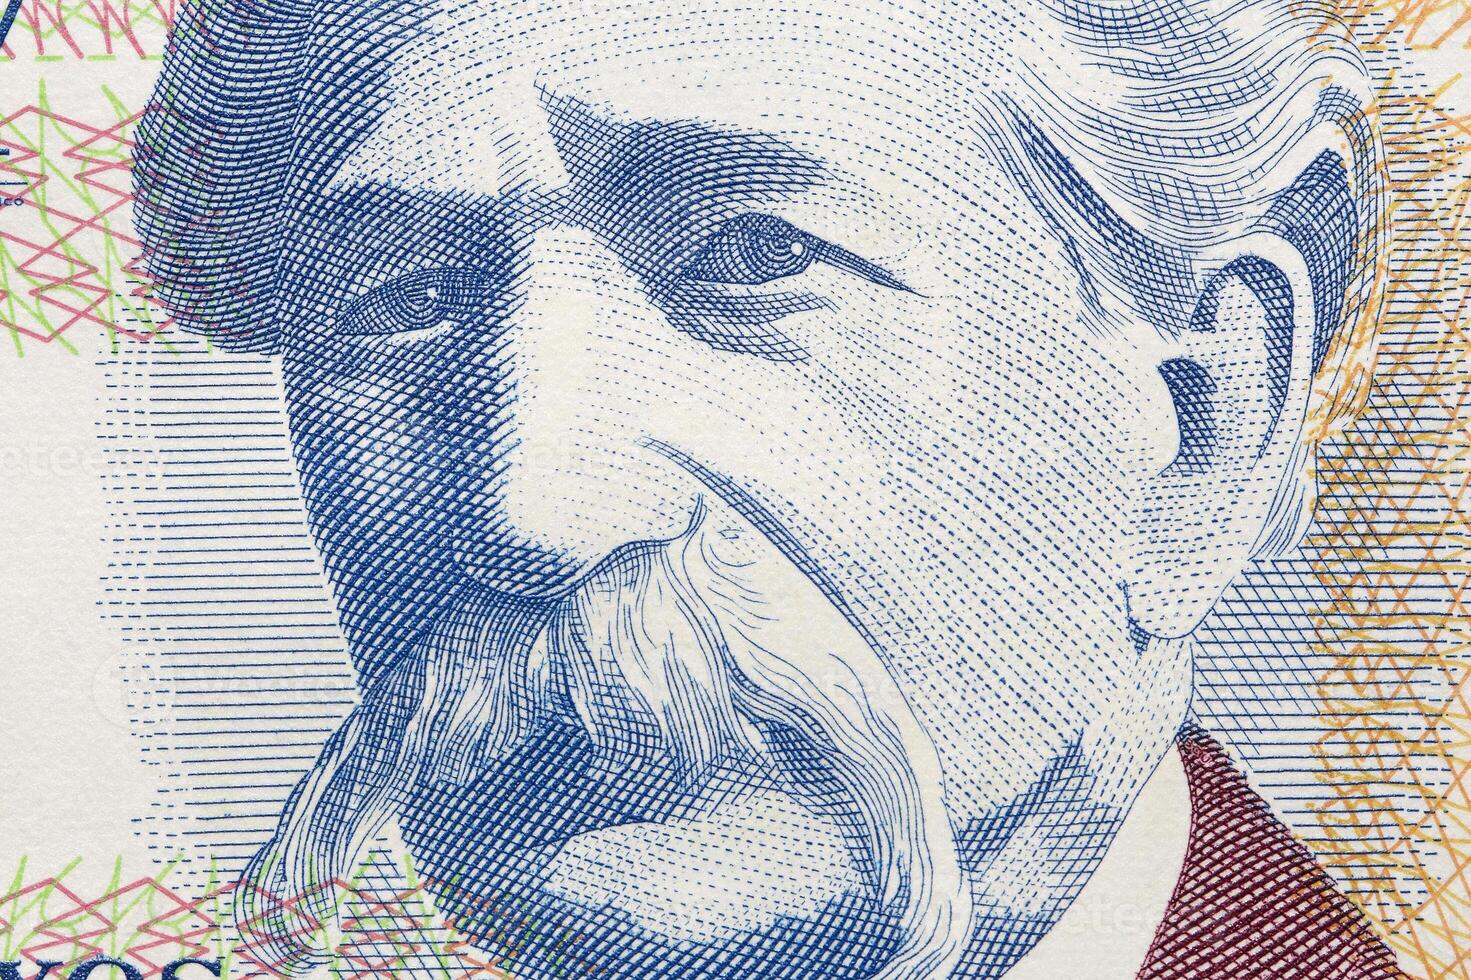 Alfredo vasquez avedo een detailopname portret van uruguayaans geld foto